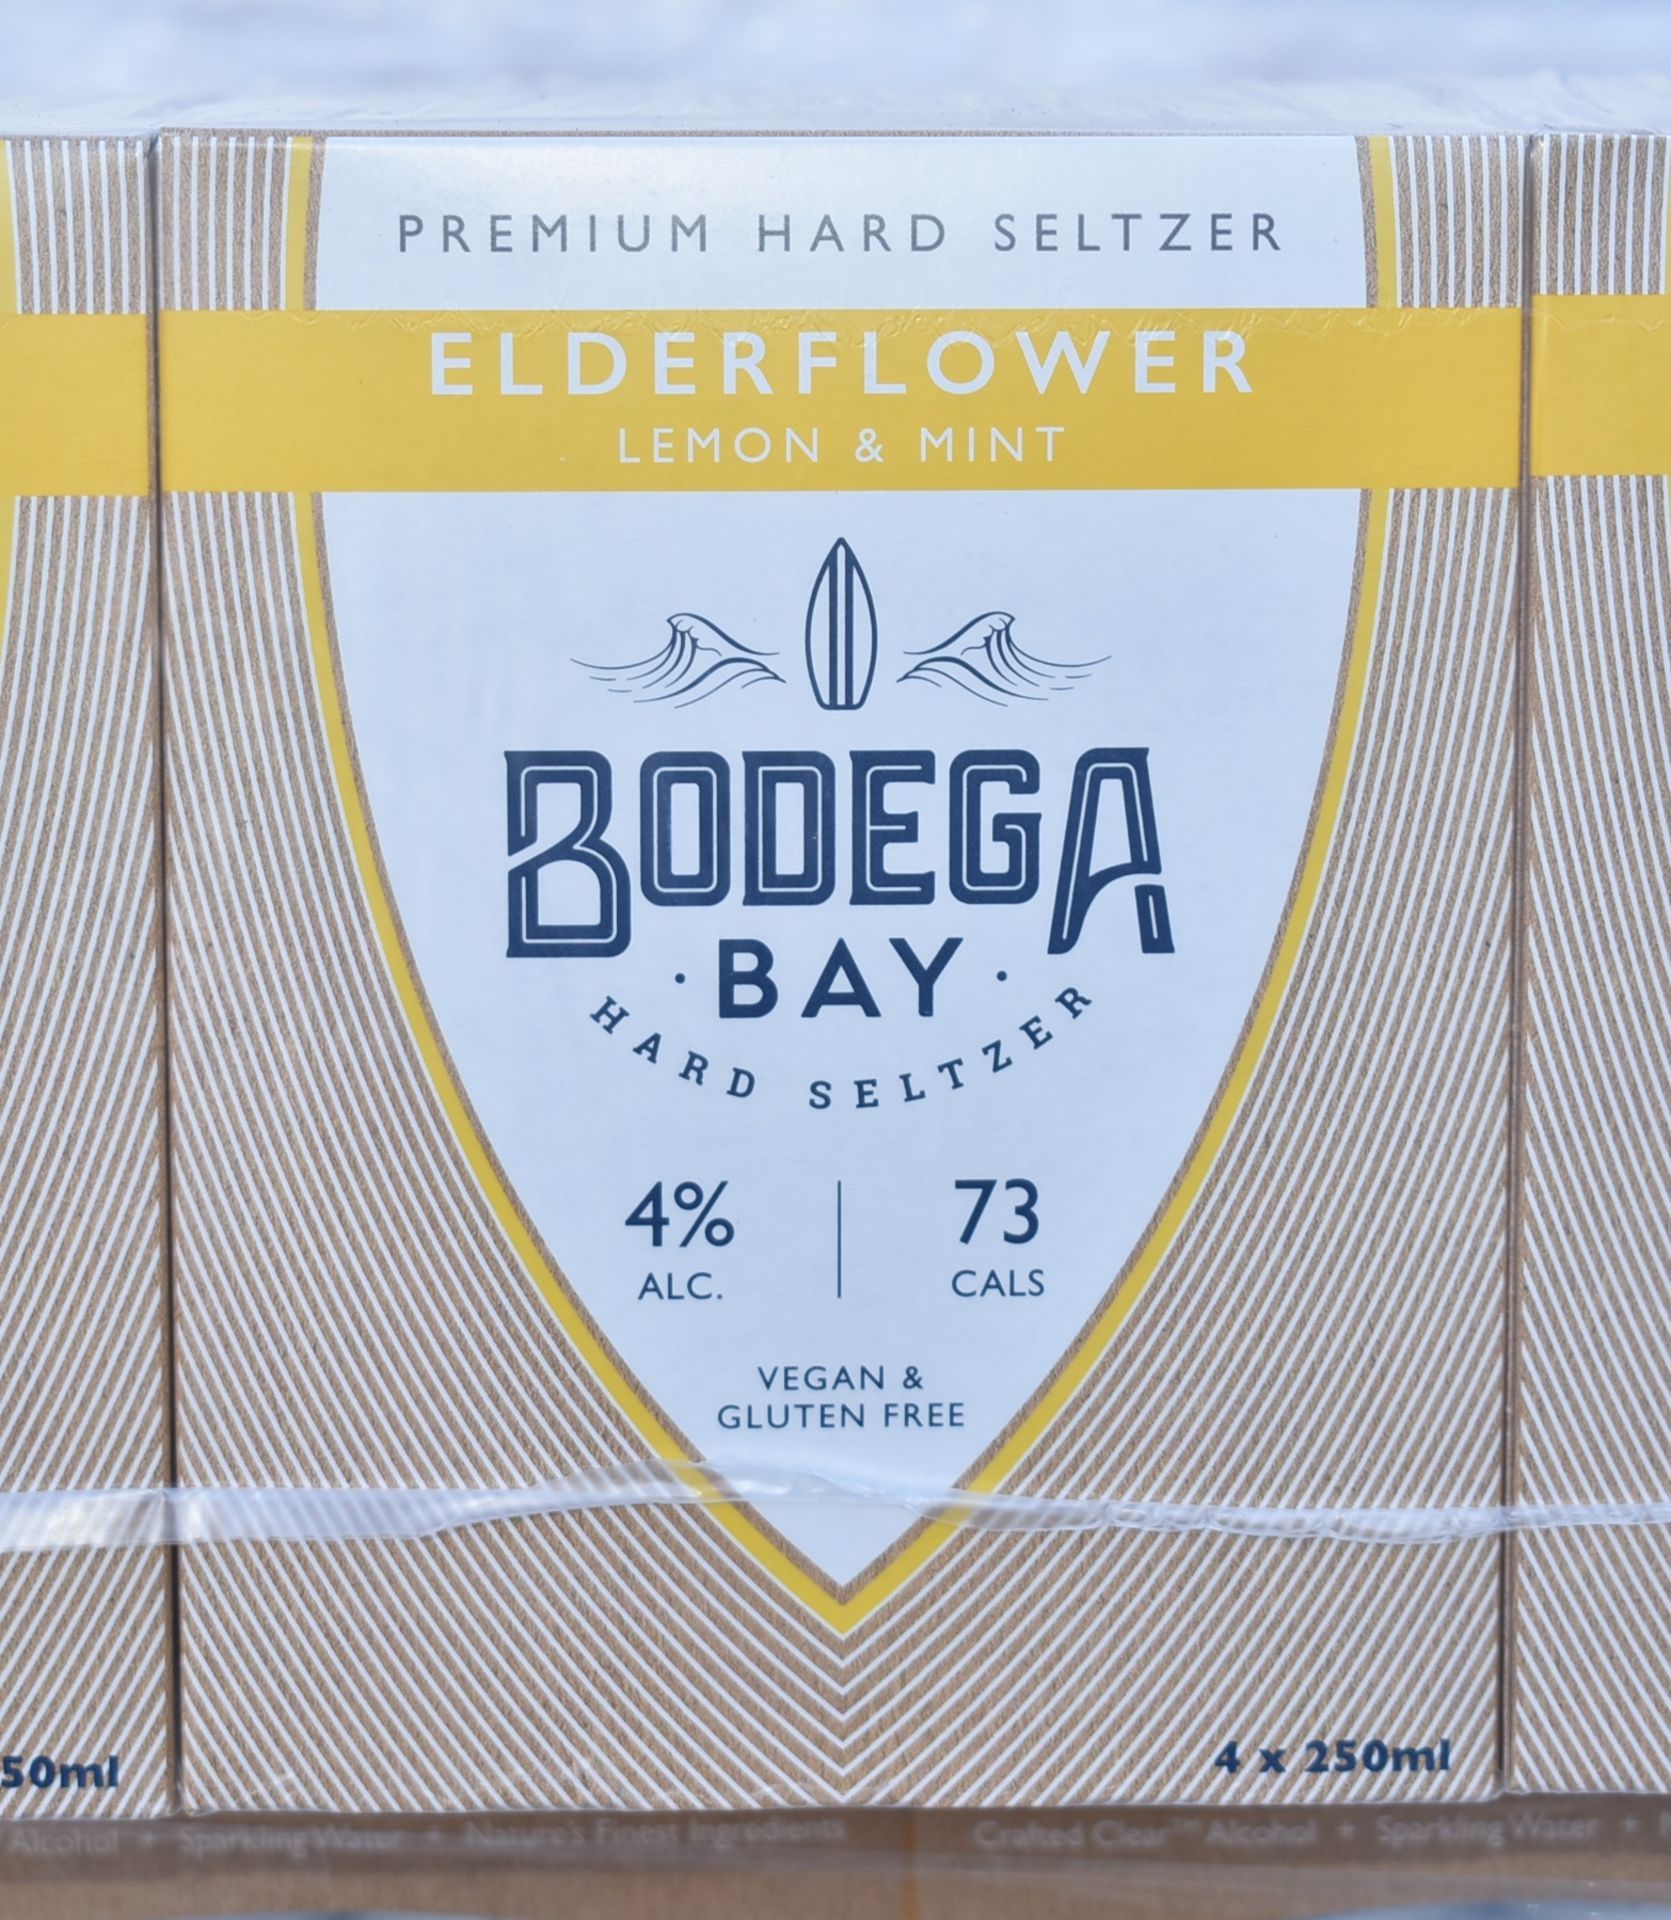 24 x Bodega Bay Hard Seltzer 250ml Alcoholic Sparkling Water Drinks - Elderflower Lemon & Mint - - Image 6 of 9